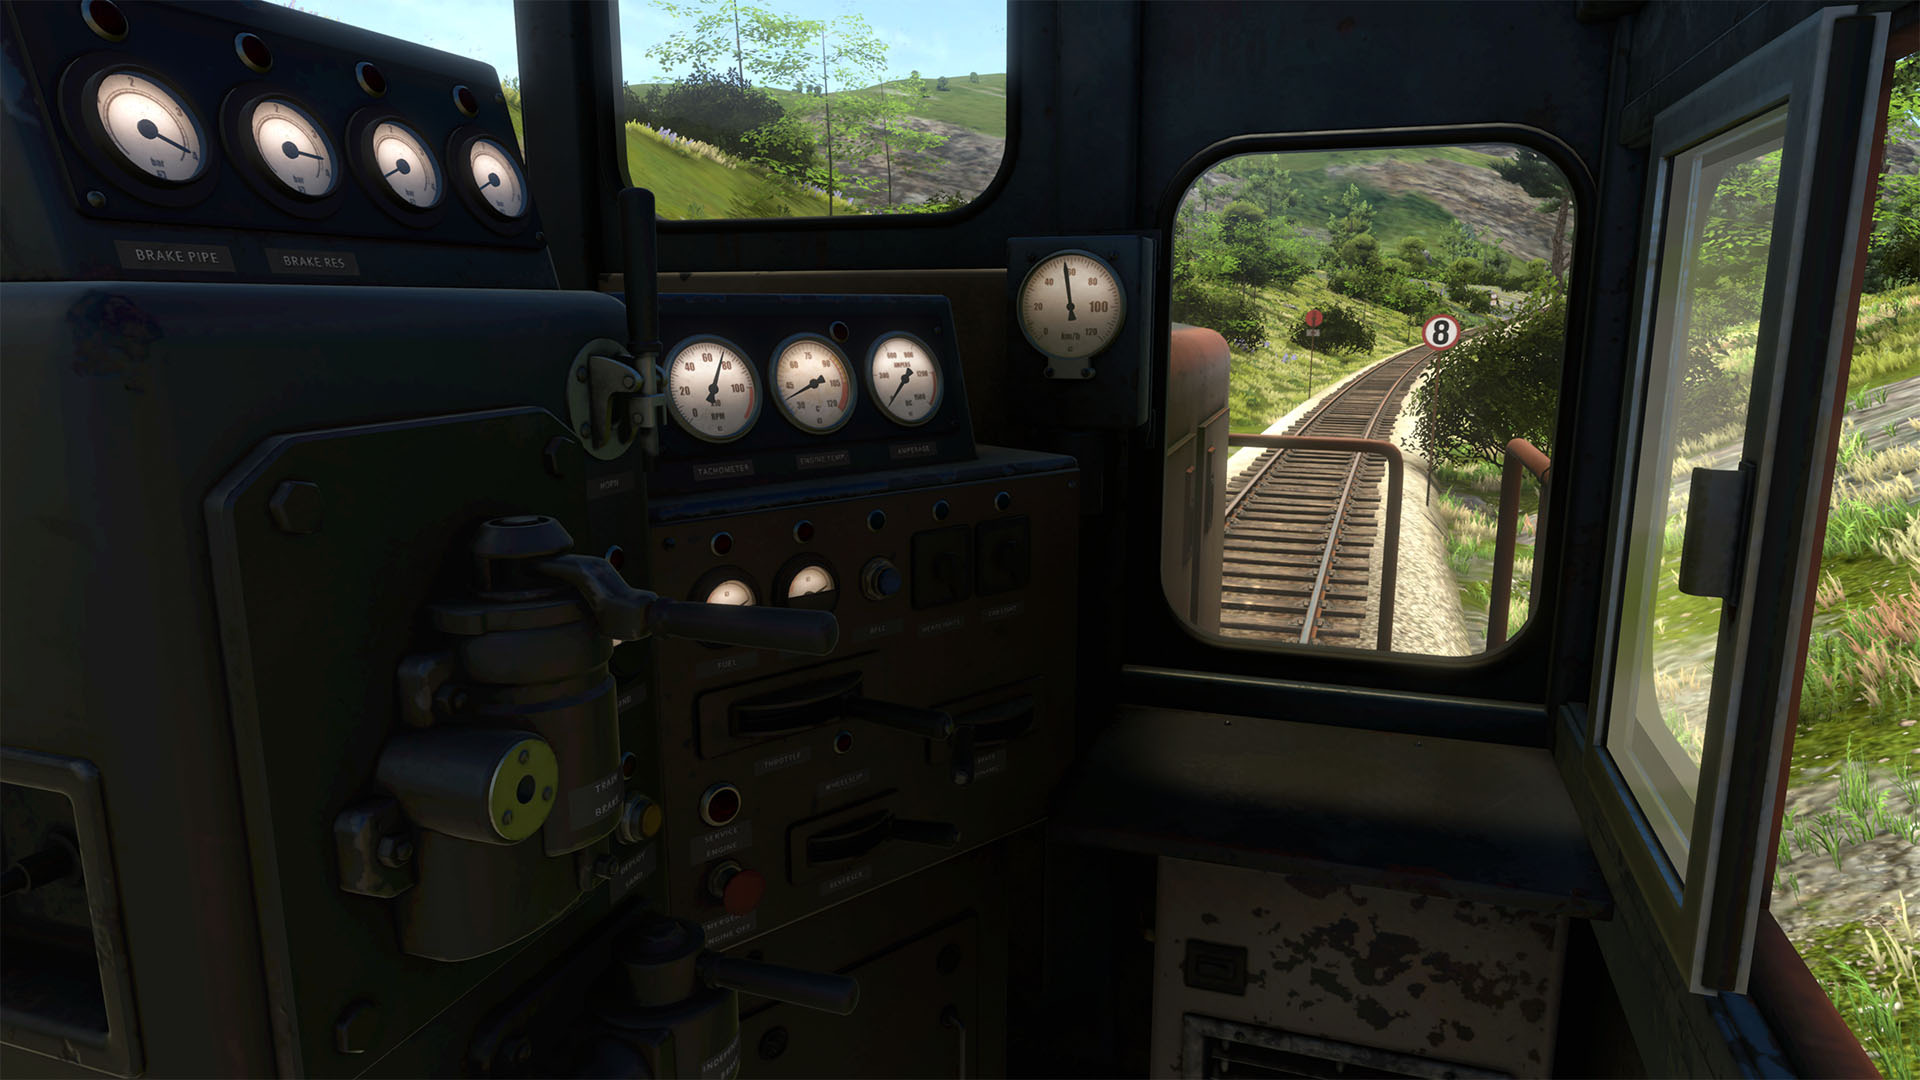 derailvalley-locomotive-diesel-cab-interior-4k.jpg